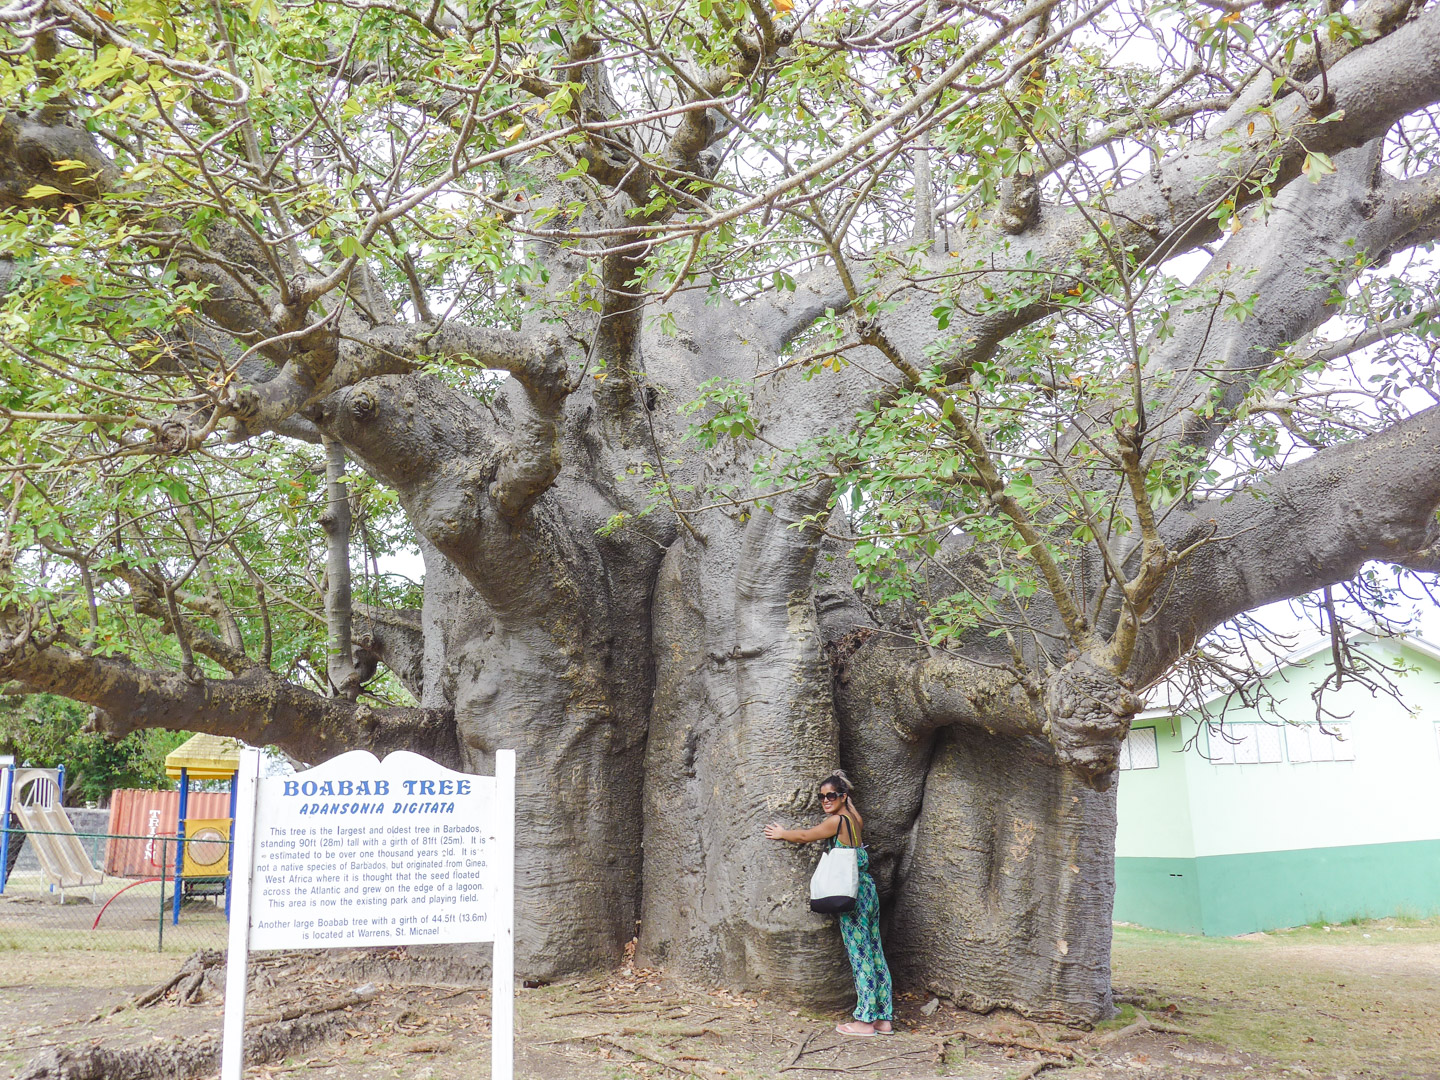 Baobab Tree in Queen's Park Bridgetown Barbados